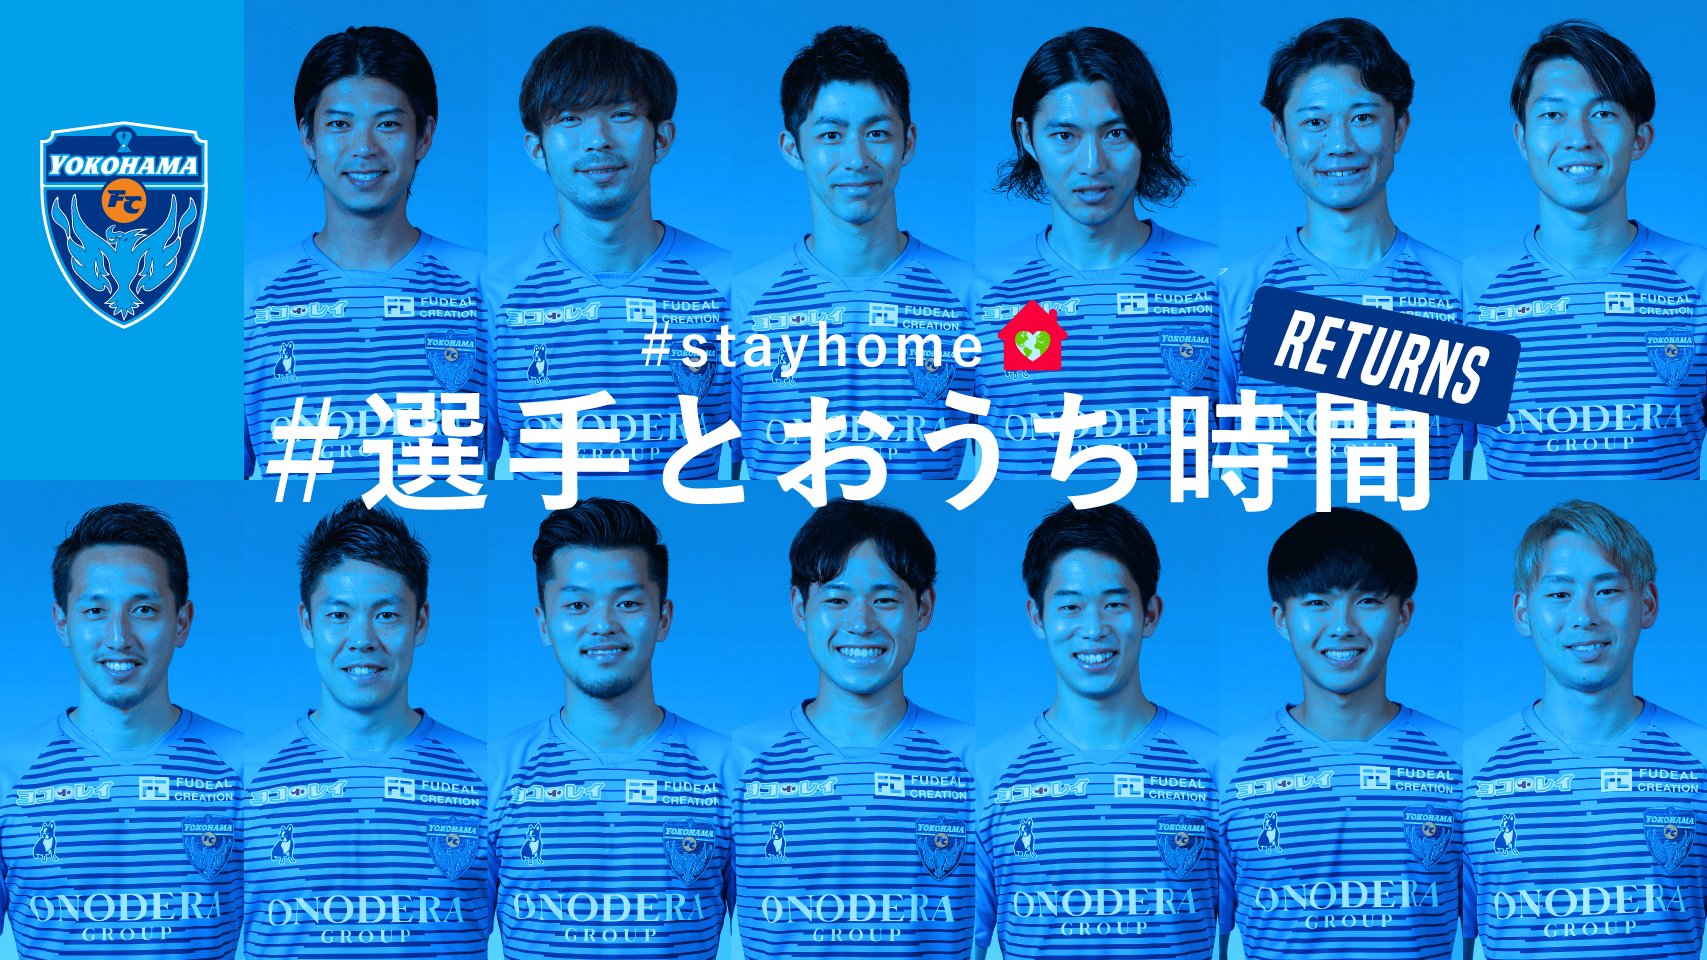 横浜fc Stayhome 企画 選手とおうち時間 リターンズ 開催決定のお知らせ 横浜fcオフィシャルウェブサイト